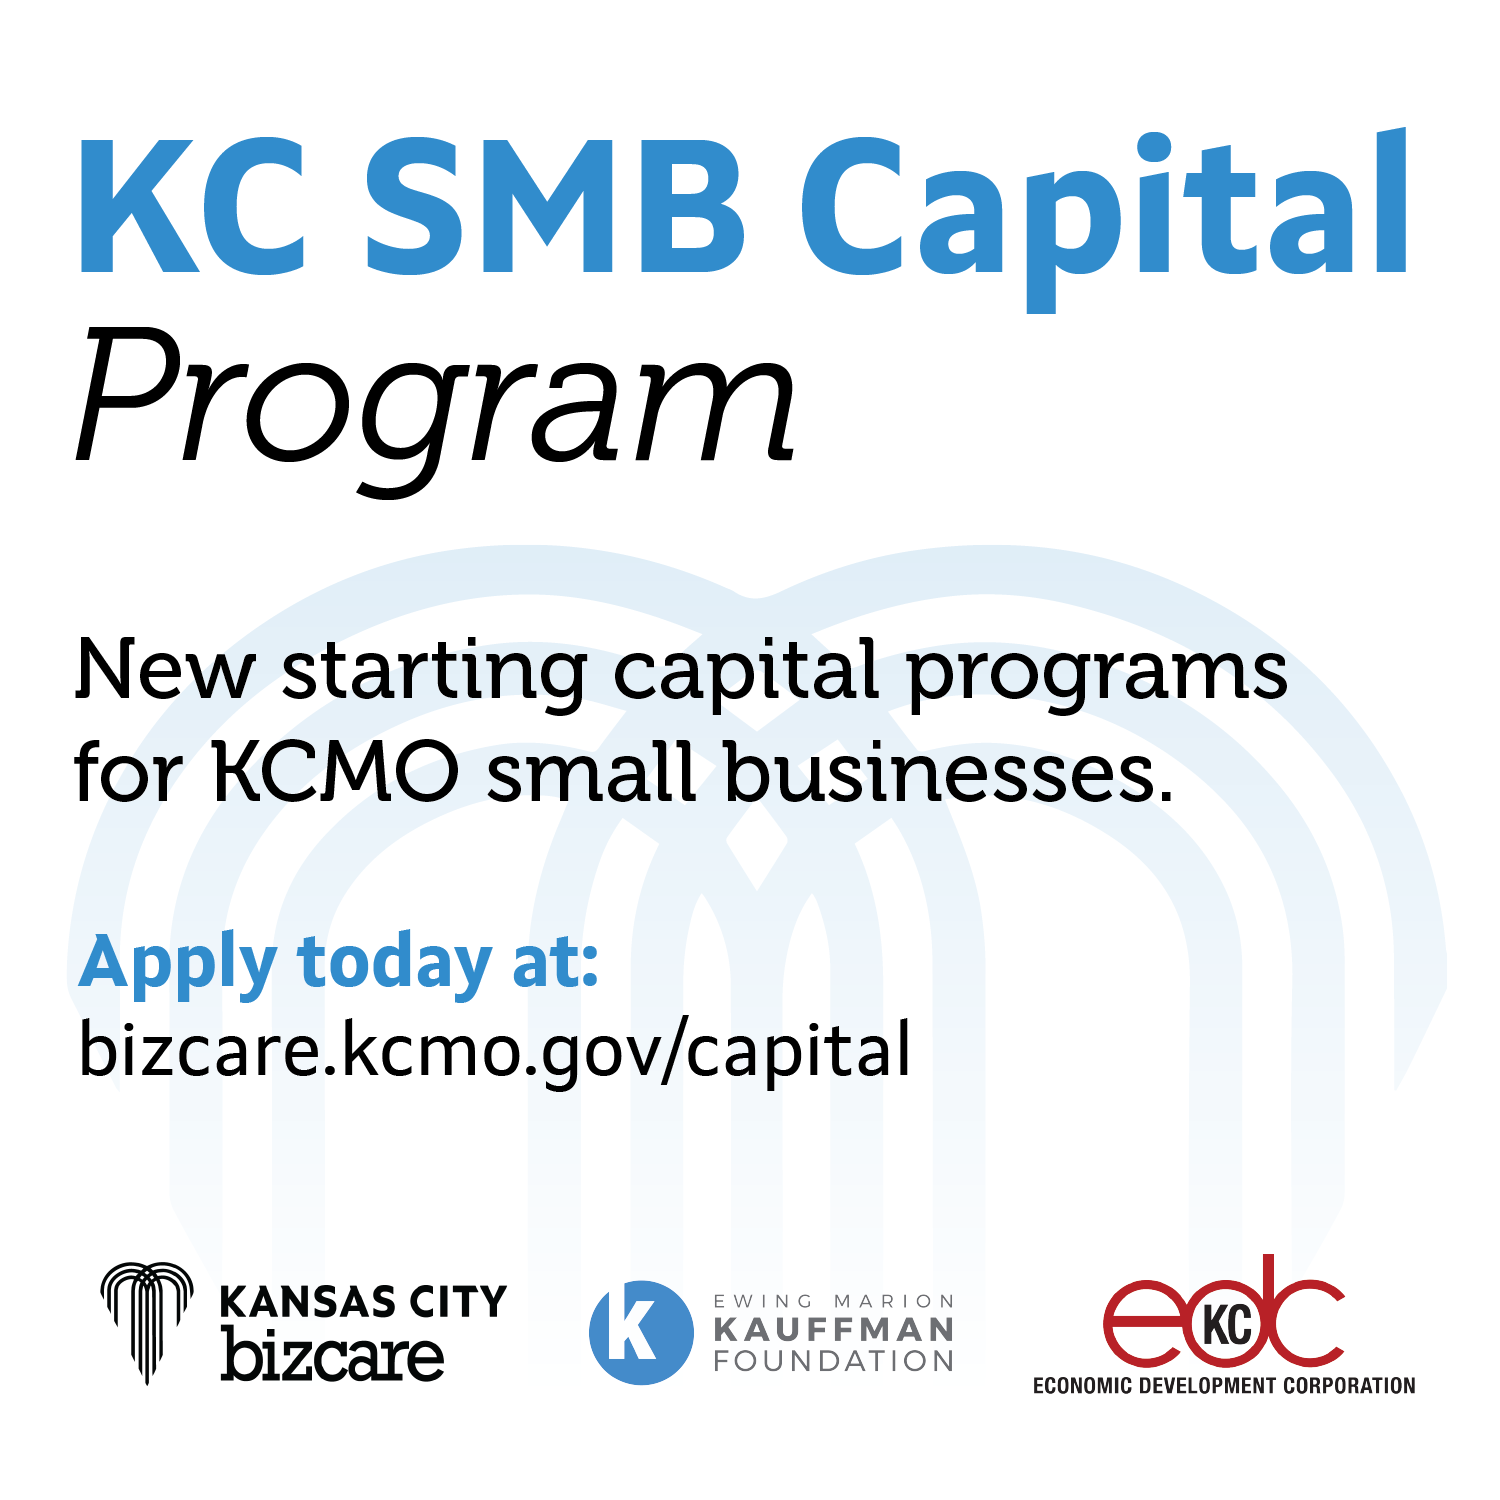 KC SMB Capital